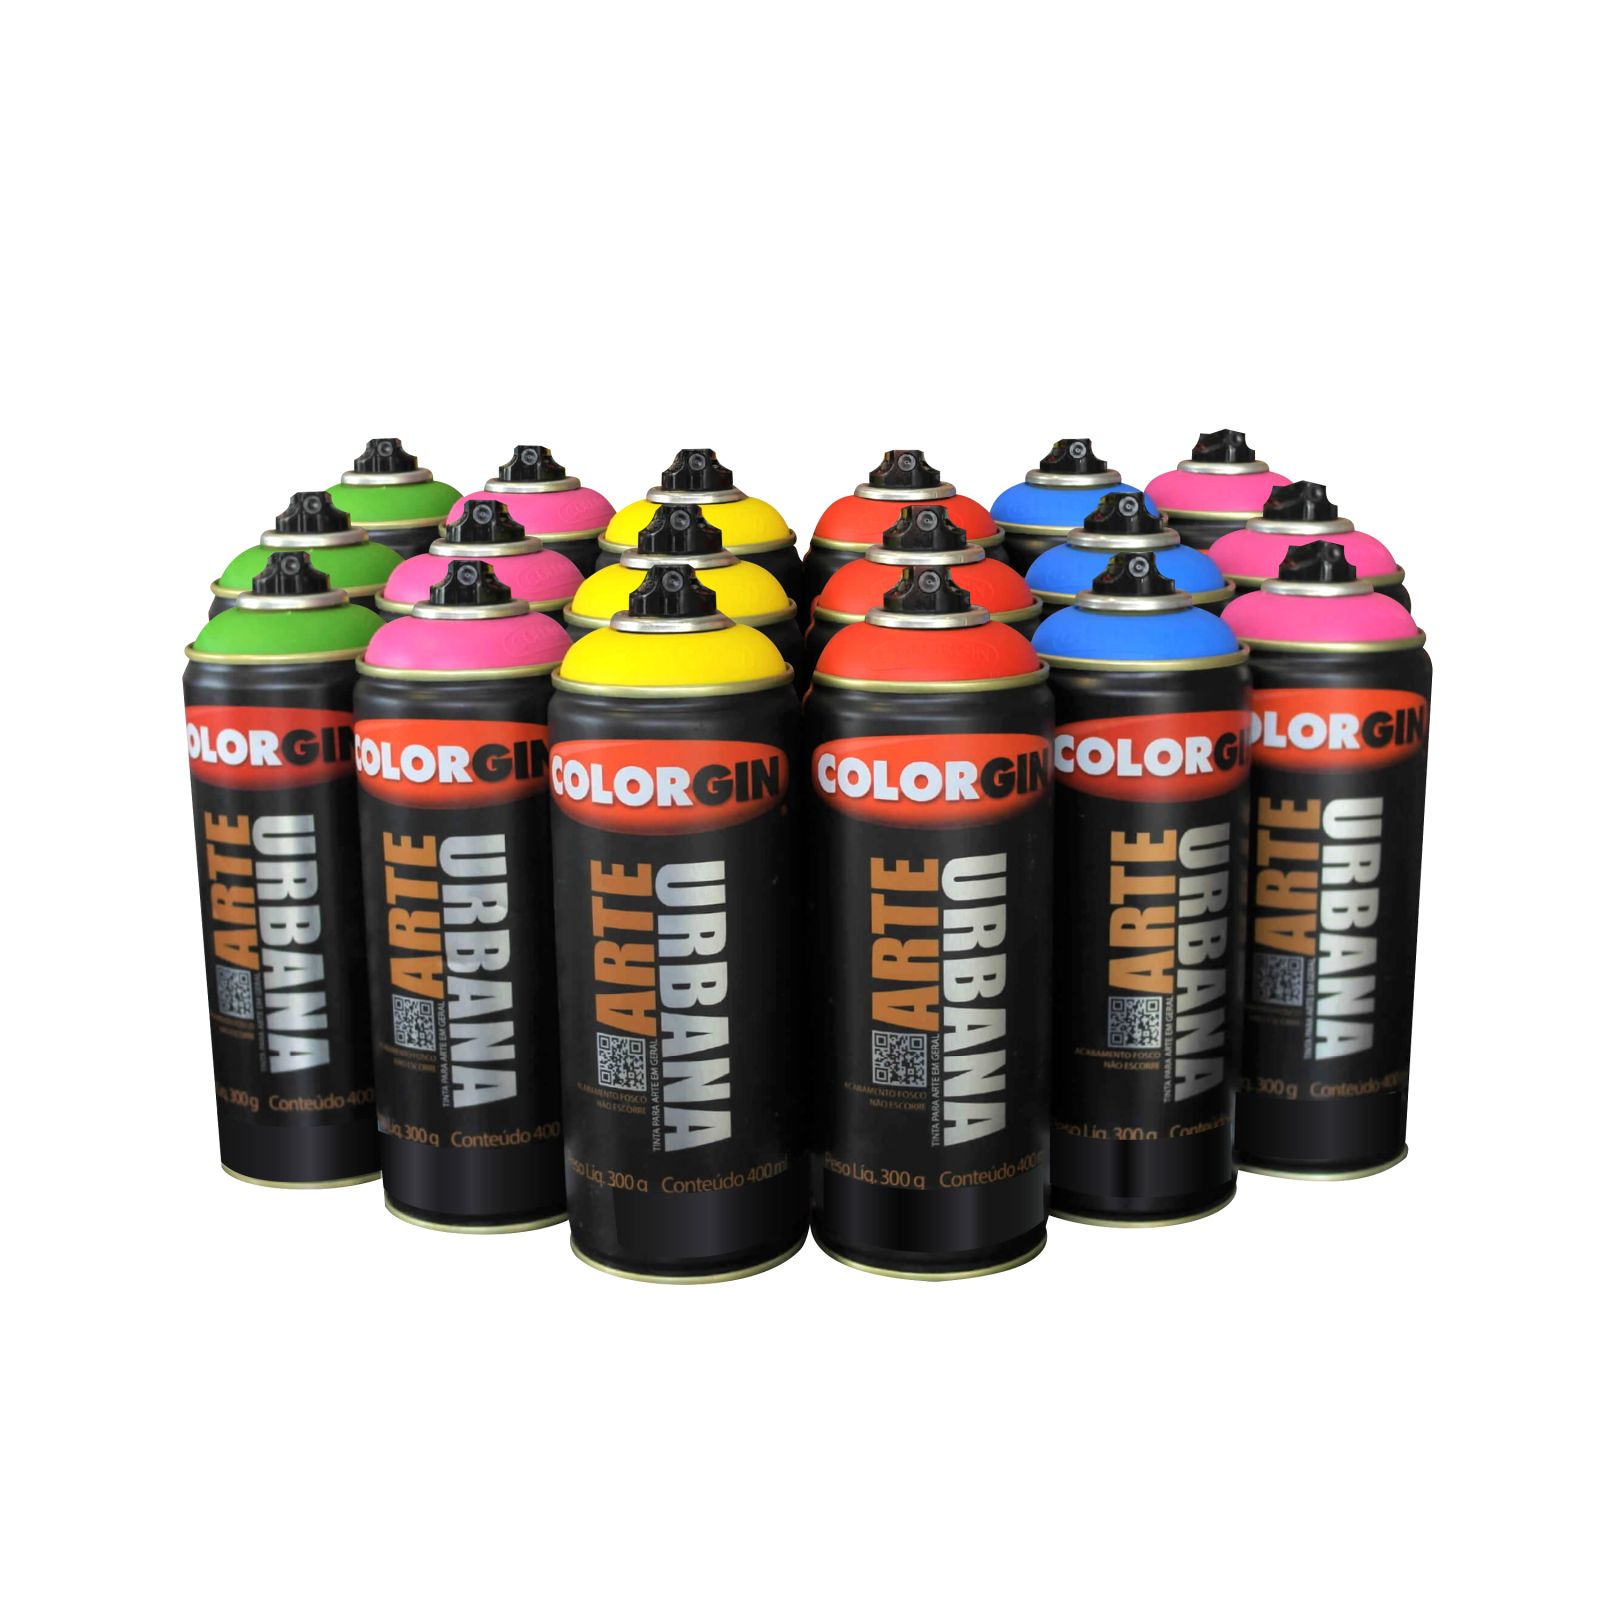 Kit Colorgin Arte Urbana com 24 latas (Cores a sua escolha) - Mundo Graffiti